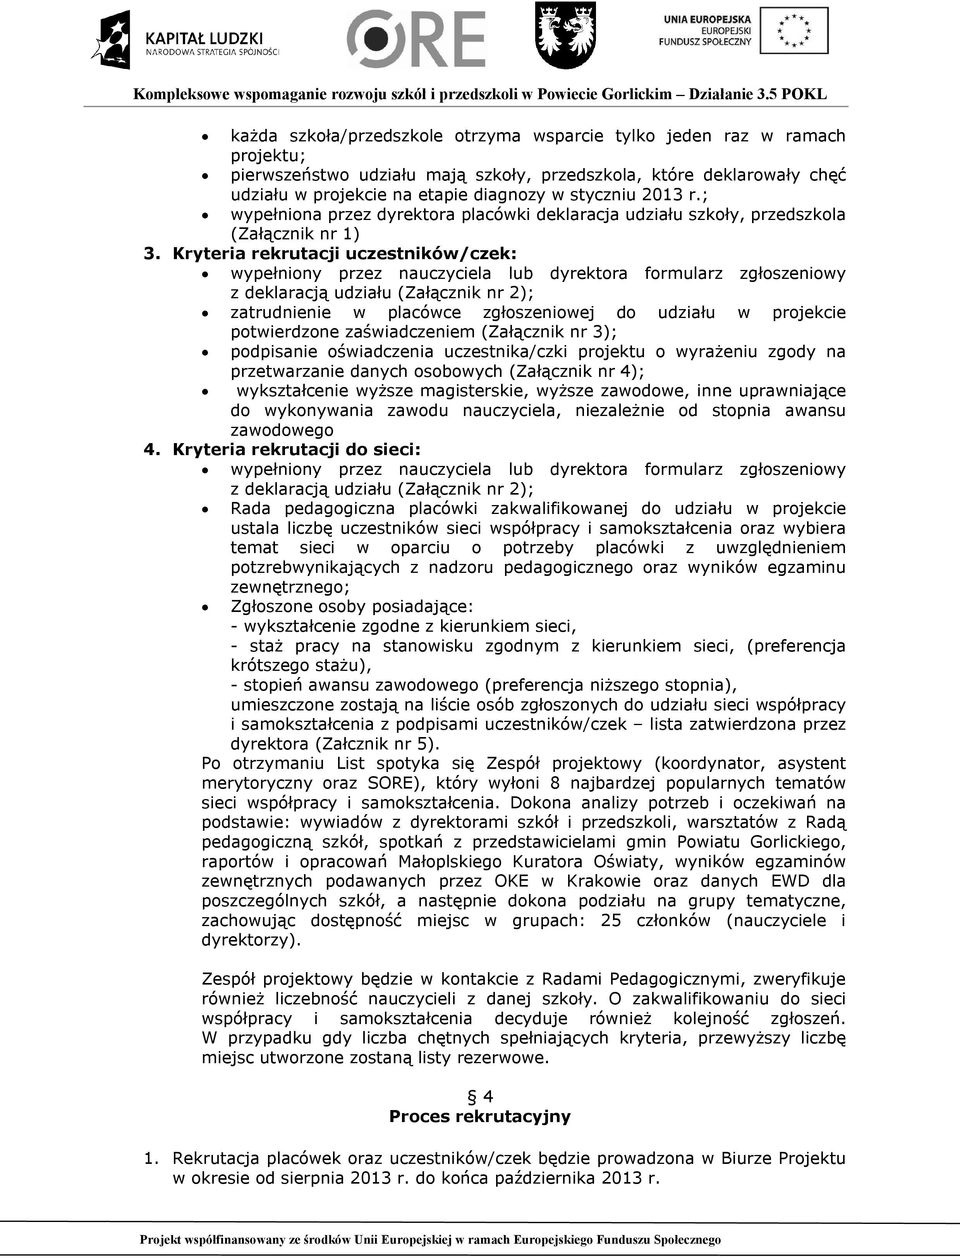 Kryteria rekrutacji uczestników/czek: wypełniony przez nauczyciela lub dyrektora formularz zgłoszeniowy z deklaracją udziału (Załącznik nr 2); zatrudnienie w placówce zgłoszeniowej do udziału w